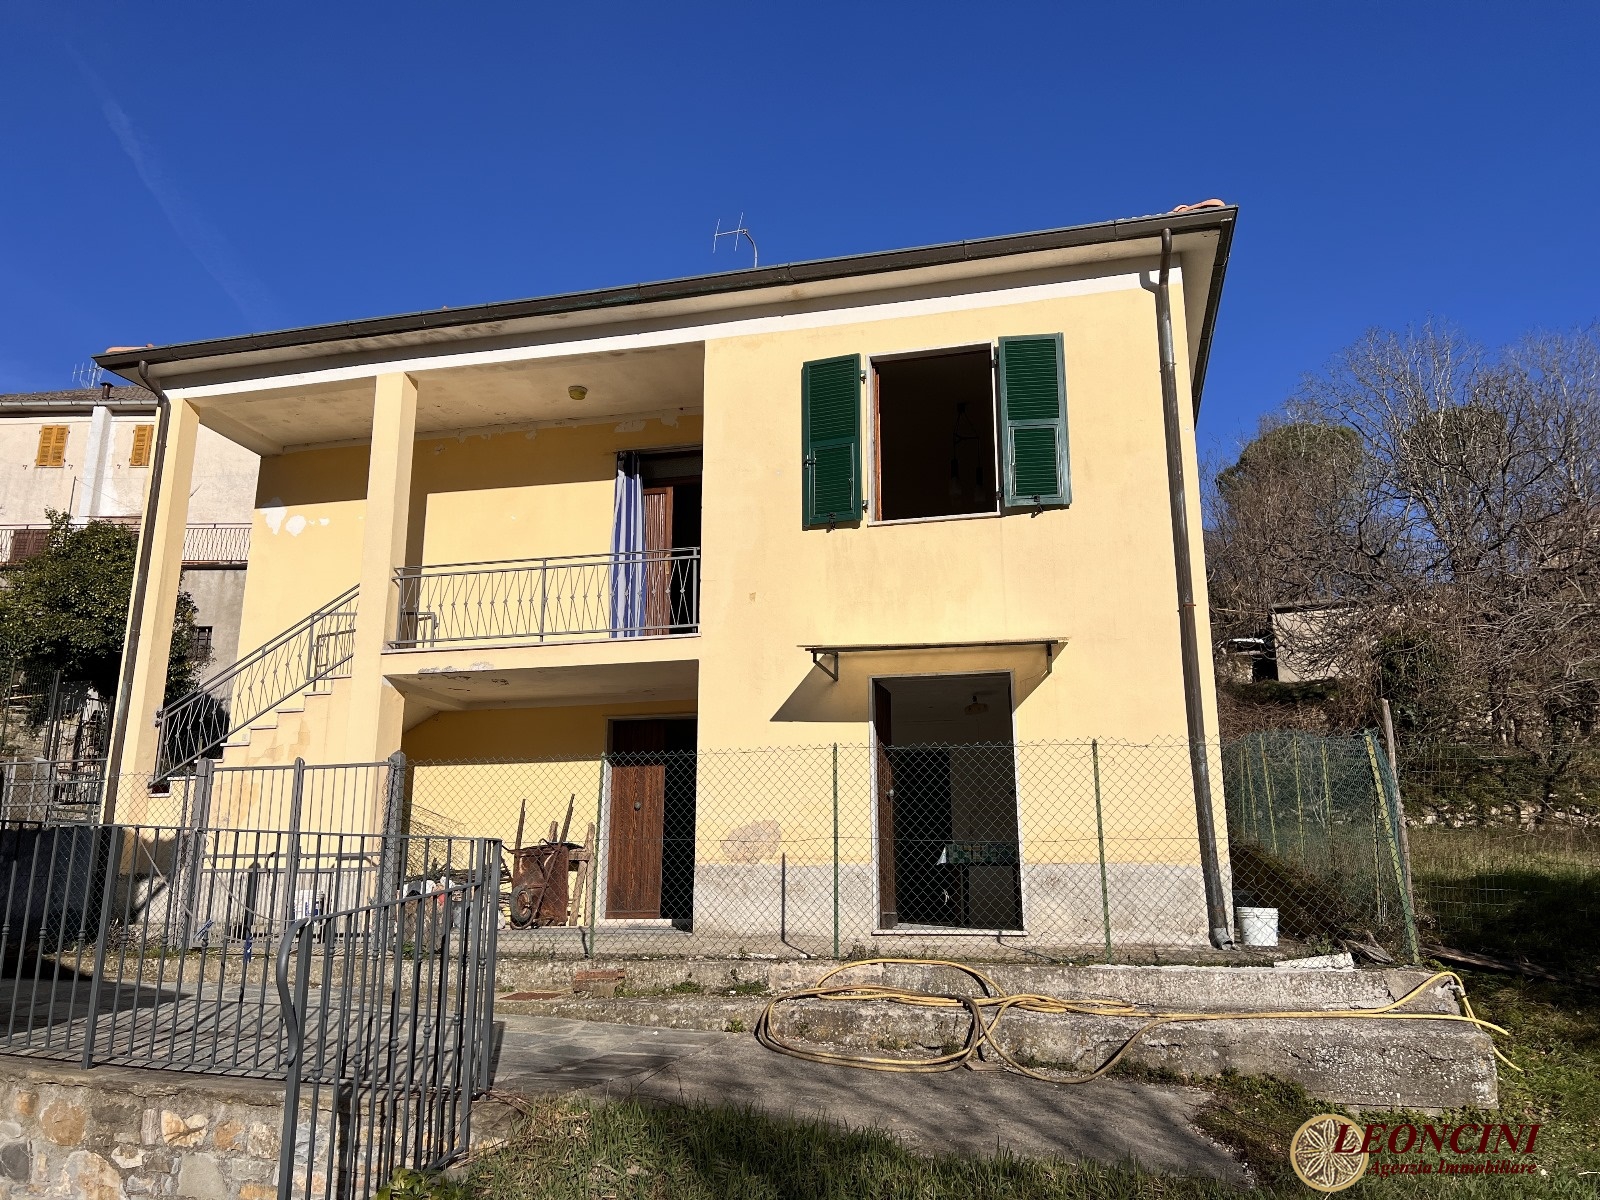 Villa in vendita a Filattiera, 7 locali, prezzo € 95.000 | PortaleAgenzieImmobiliari.it